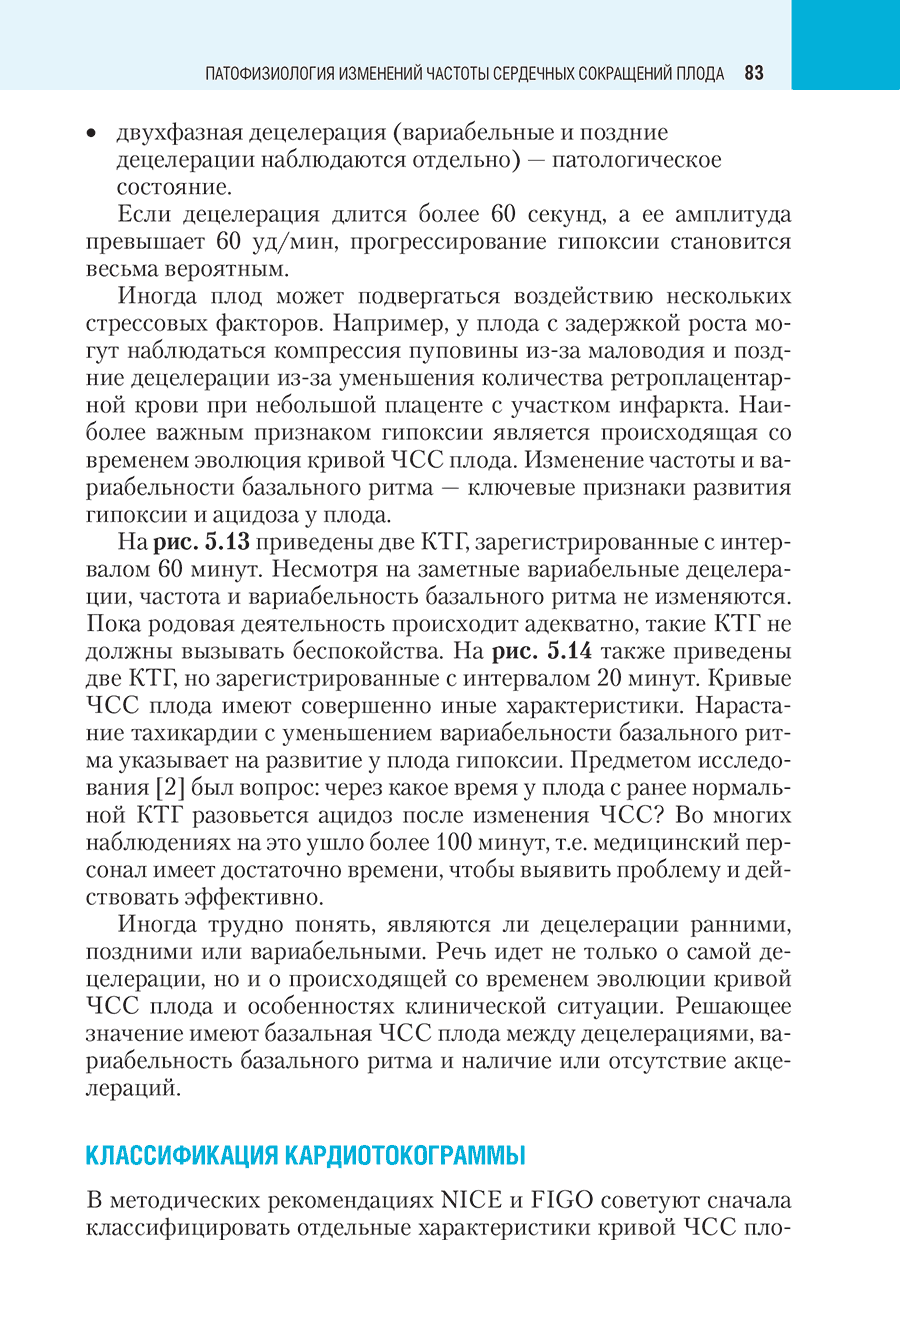 Пример страницы из книги "Основы кардиотокографии: теоретические и клинические аспекты"